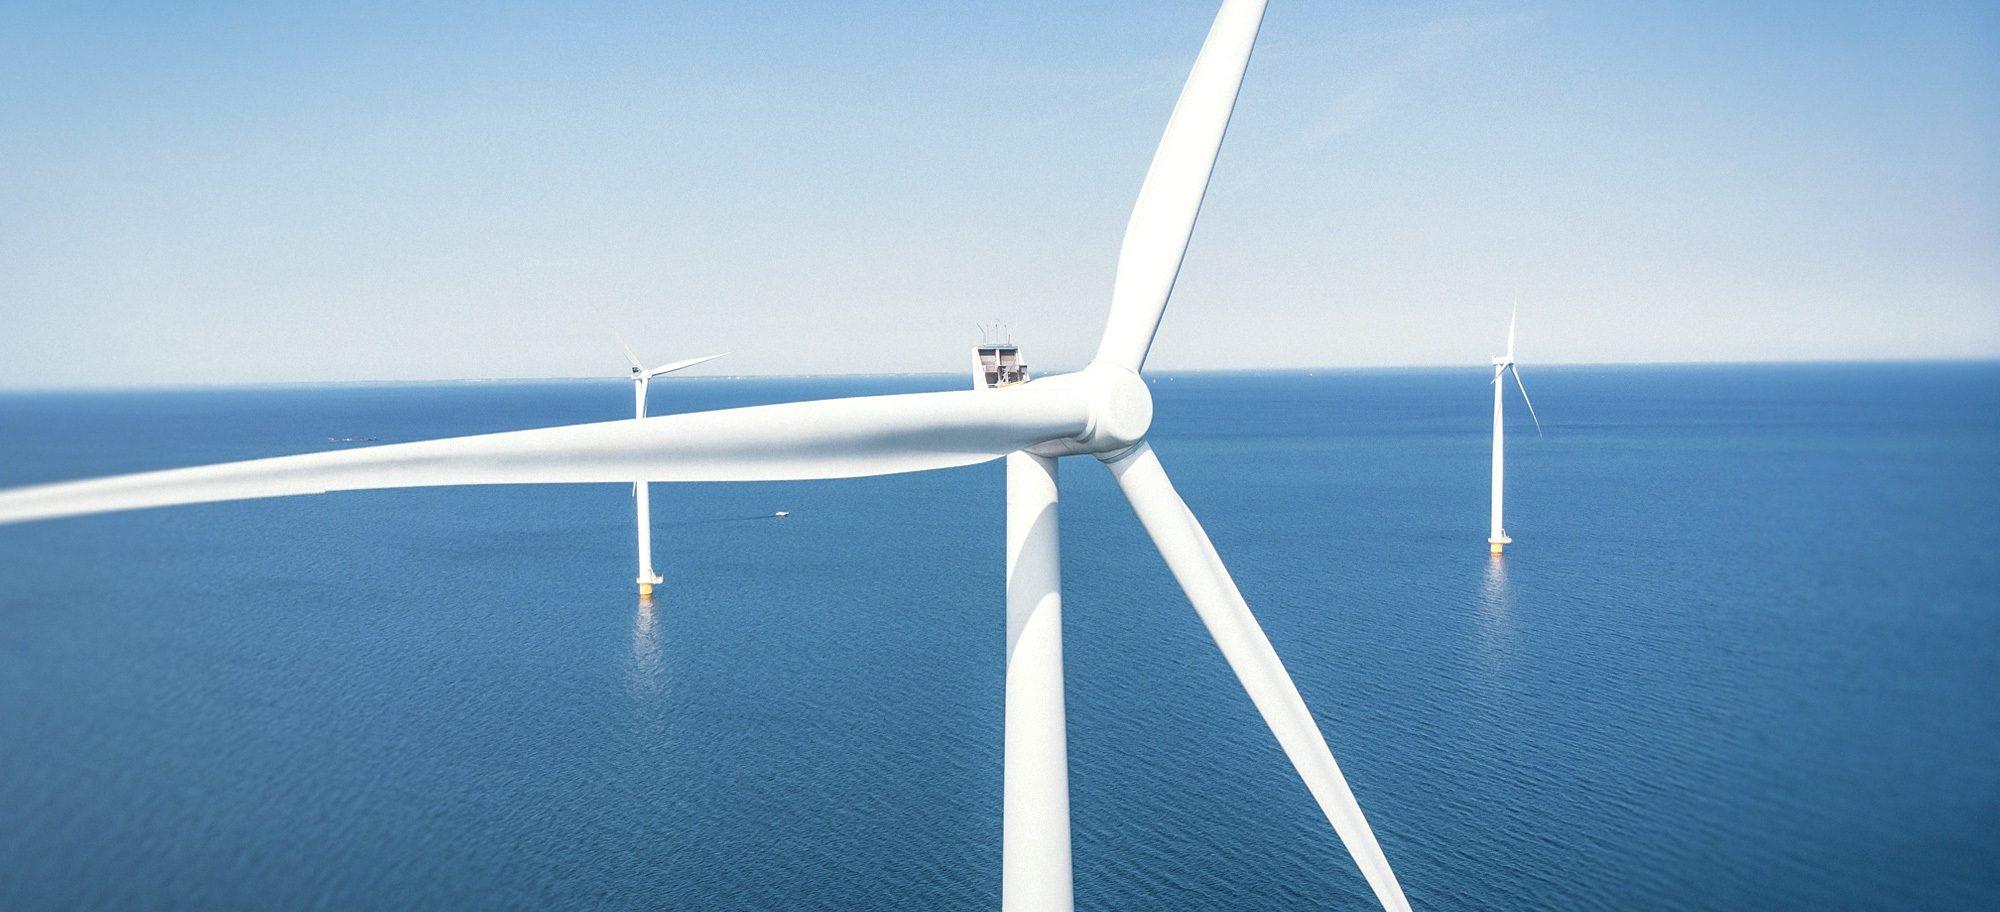 Ålandsbanken - Ålandsbanken Fondbolag och OX2 utökar samarbetet kring havsbaserad vindkraft